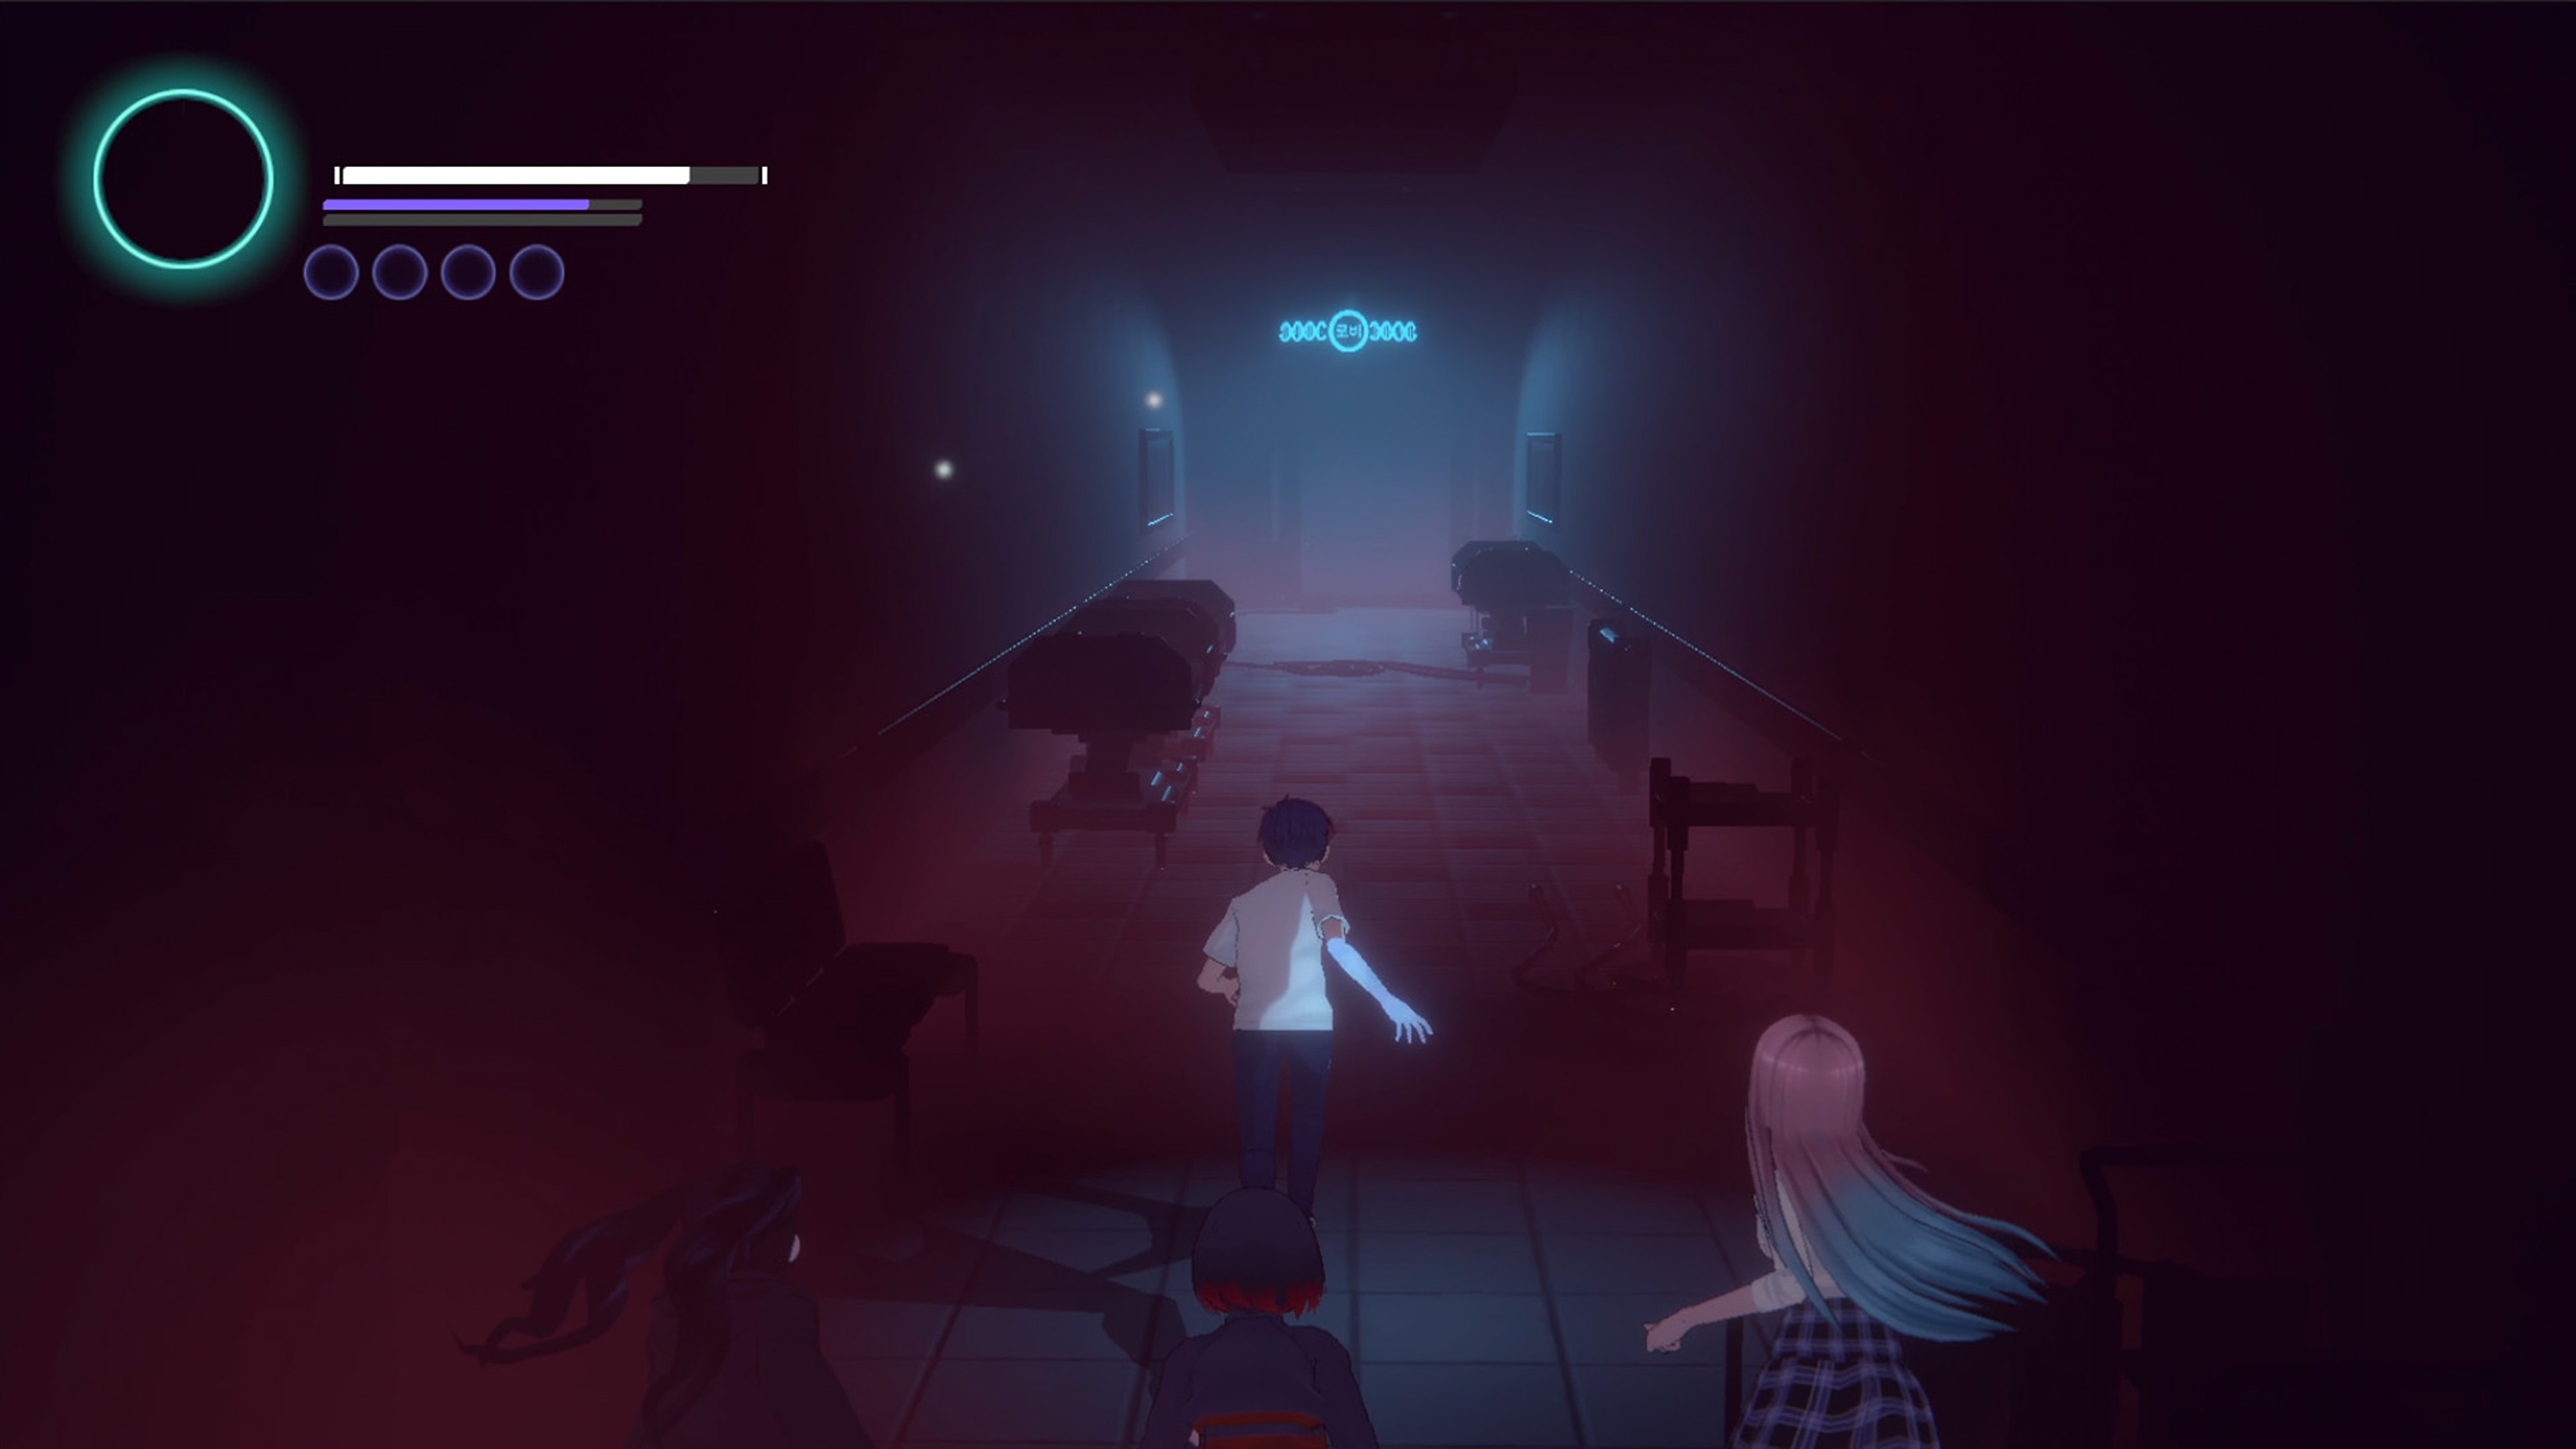 Eternights-képernyőkép, amelyen két középiskolás korú karakter fut egy gyengén megvilágított folyosón. 